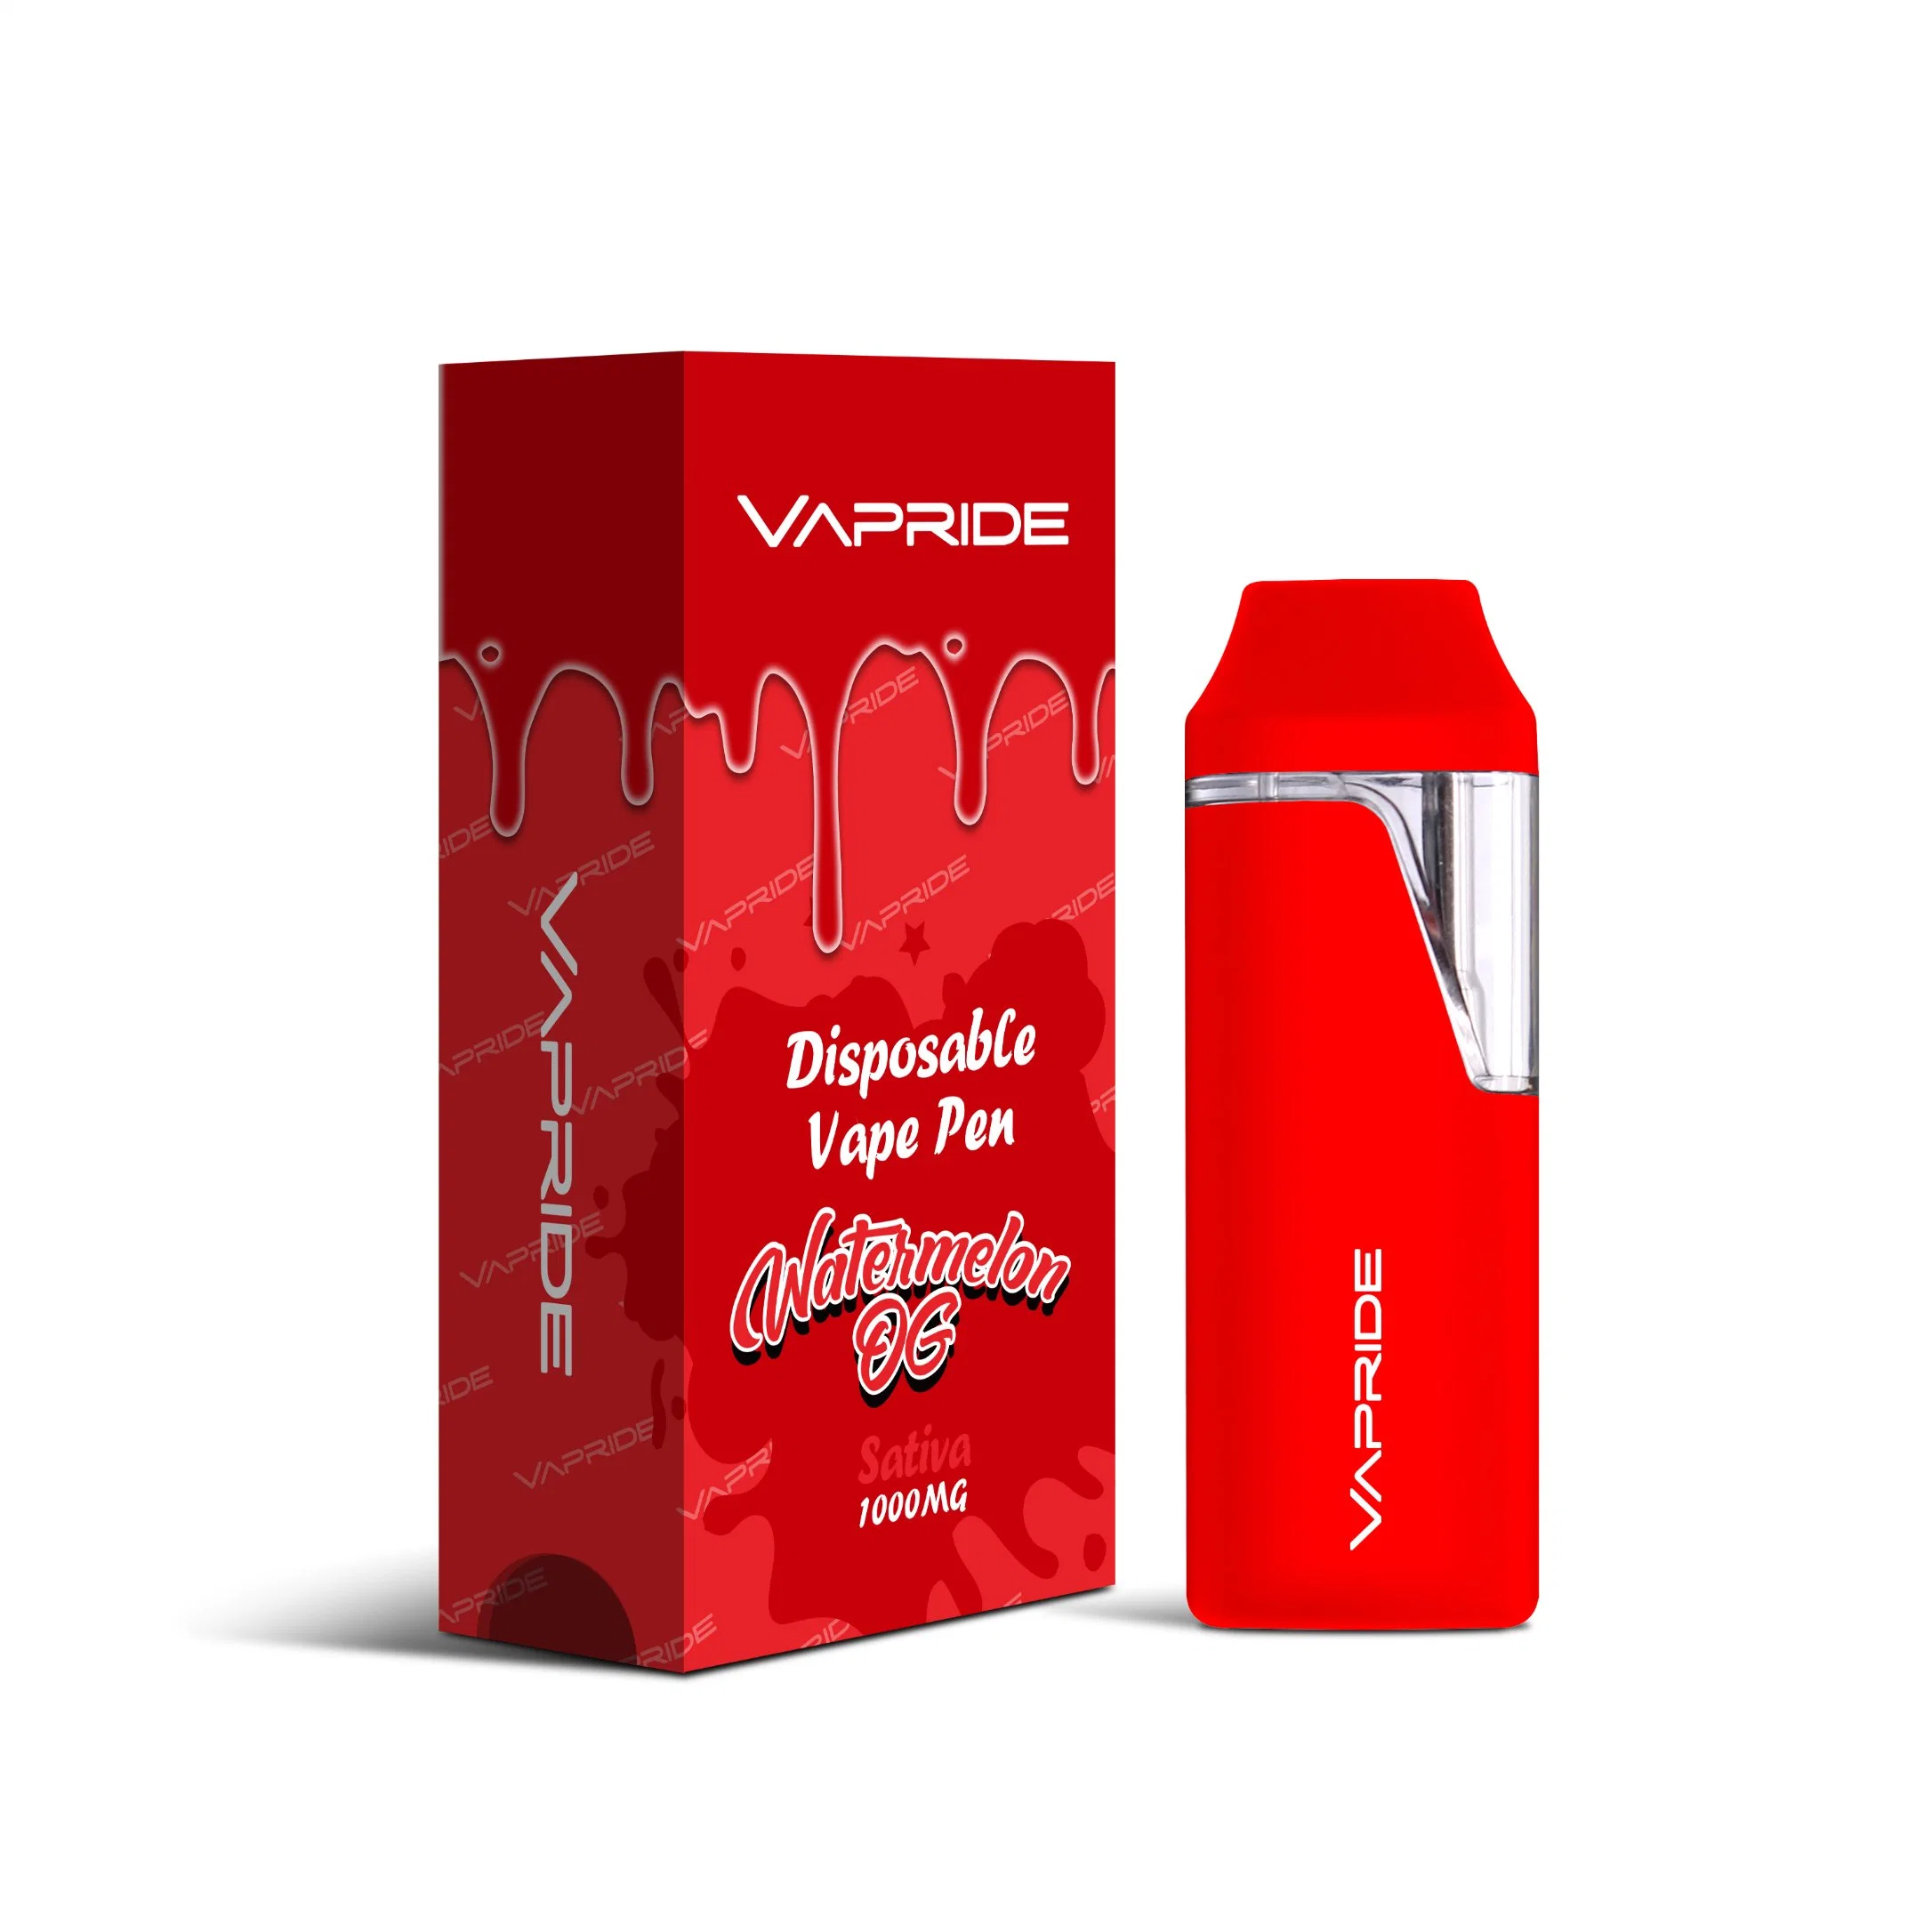 1/2 Grams Vape Wholesale Thick Live Resin D8 Oil Vaporizer Pen Pod Disposables